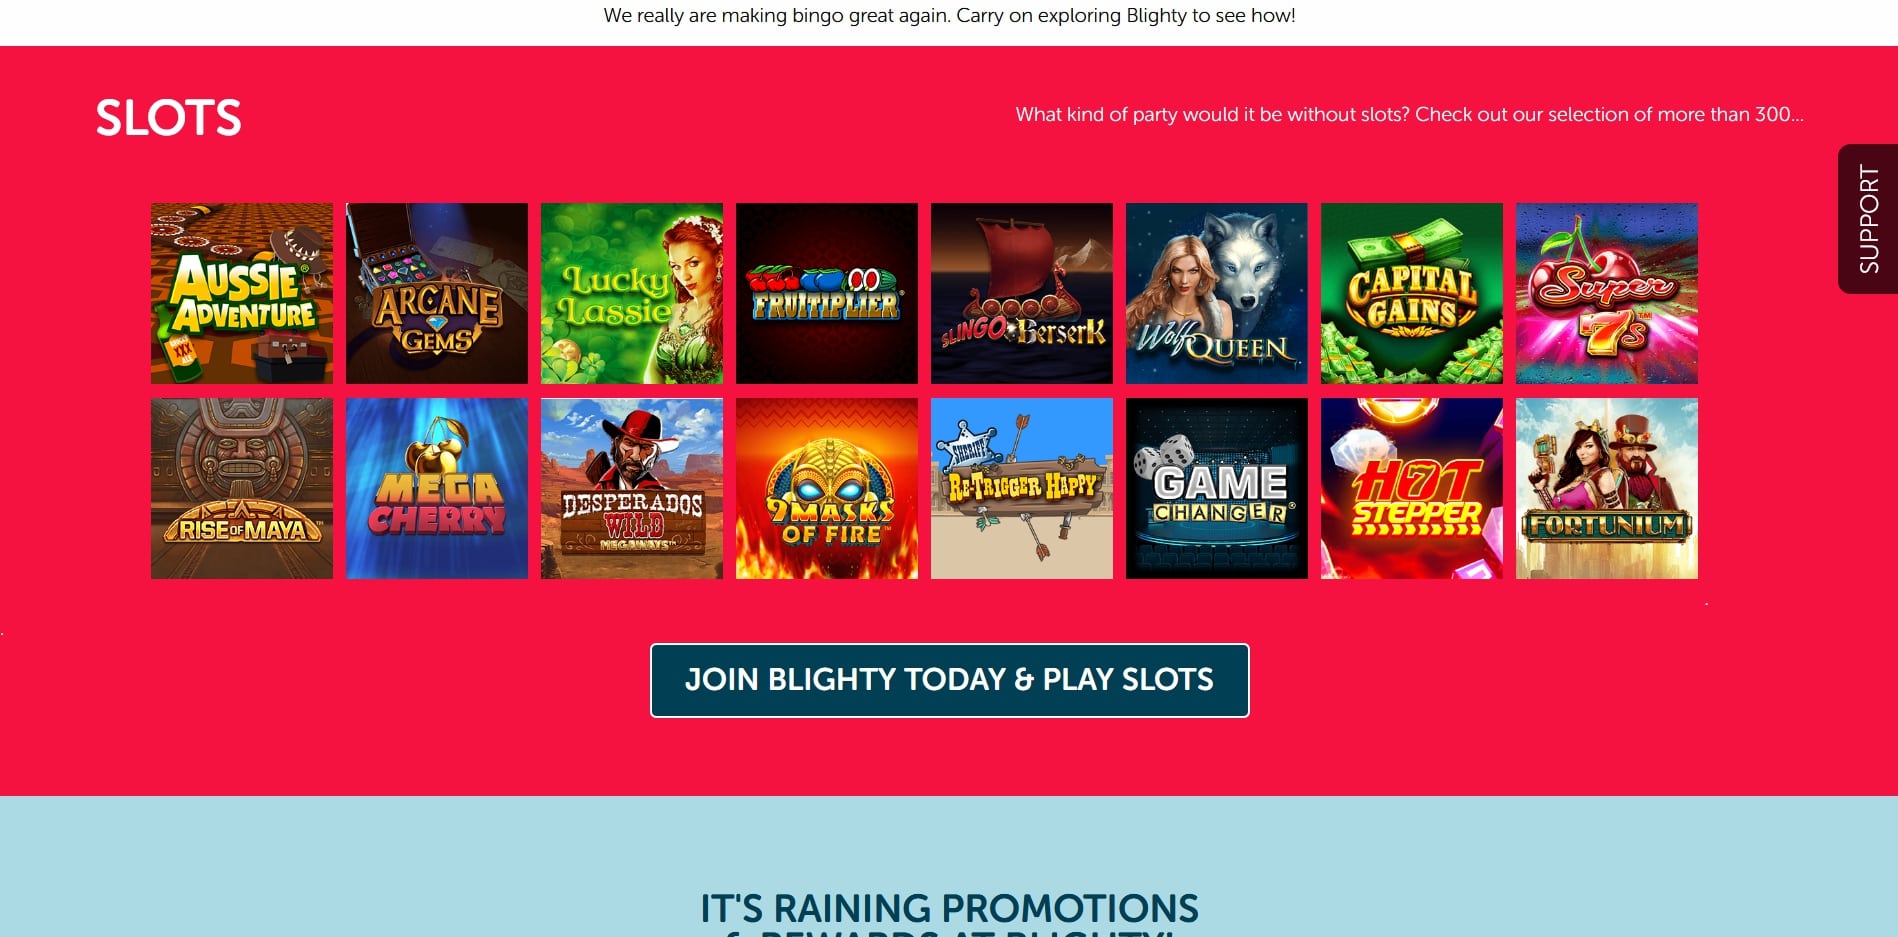 Blighty Bingo Casino Games